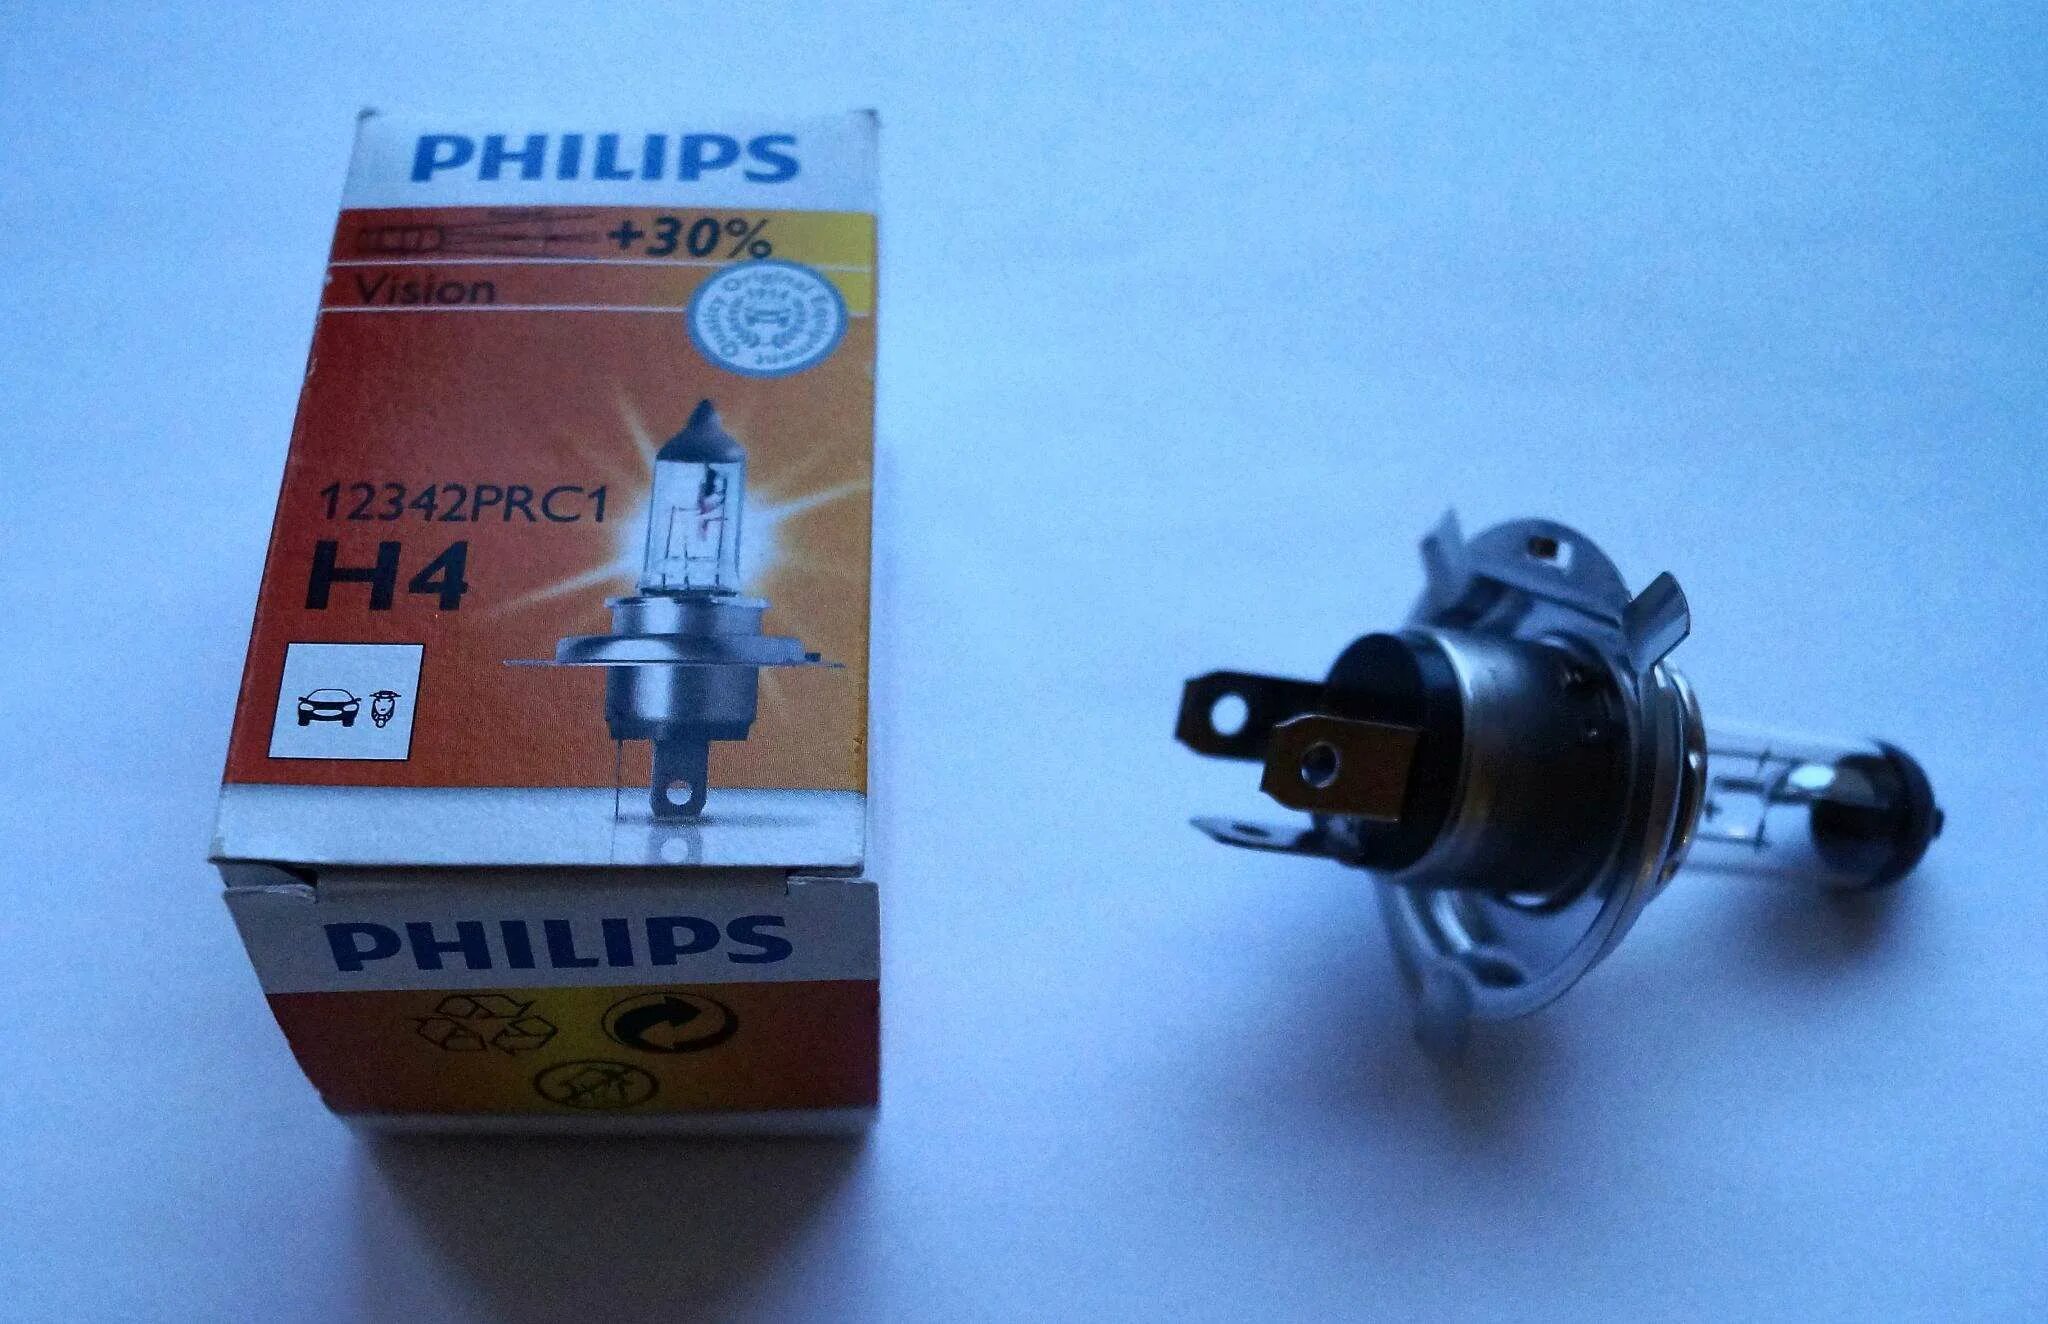 Philips h4 12342prc1. Галогенная лампа Philips h4 (60/55w 12v) Vision 1шт 12342prc1. Лампа Philips h4 12342prc1. Philips h4 12342 Premium 12v 60/55w e1 2c3 u.